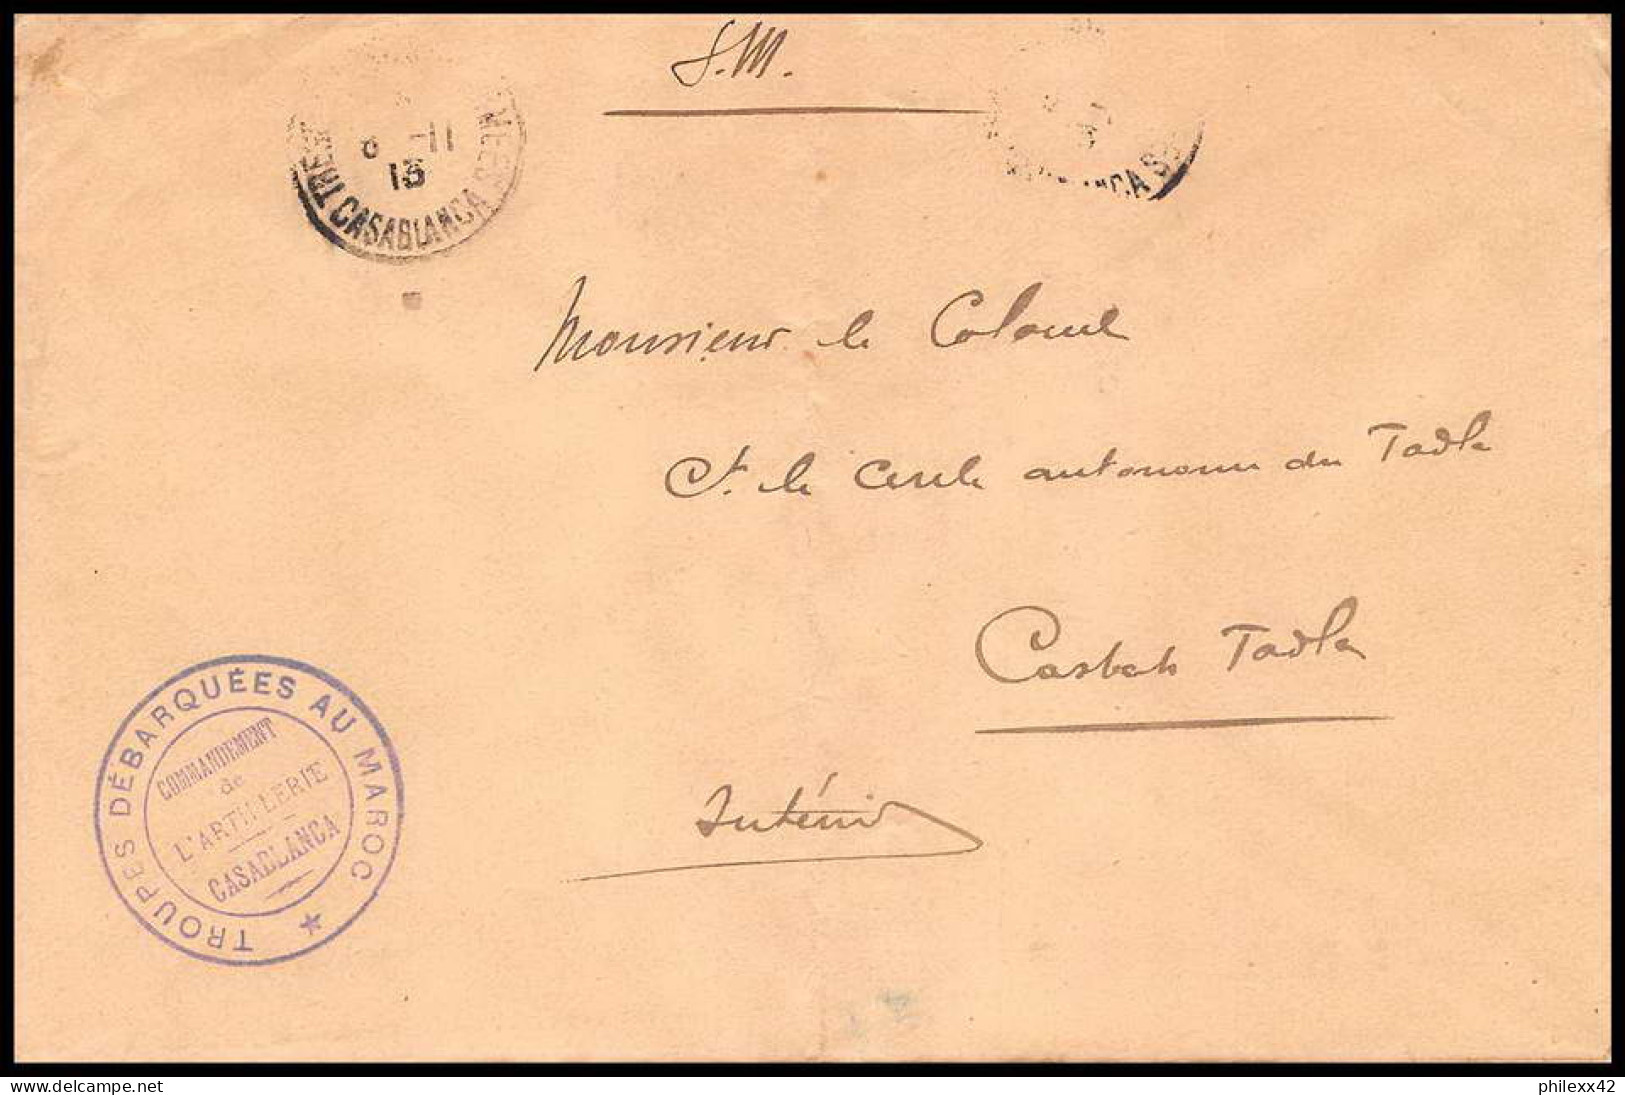 collection N°33 marcophilie militaire lot de 57 lettres covers guerre 1914 départ - de 2 euros pièce